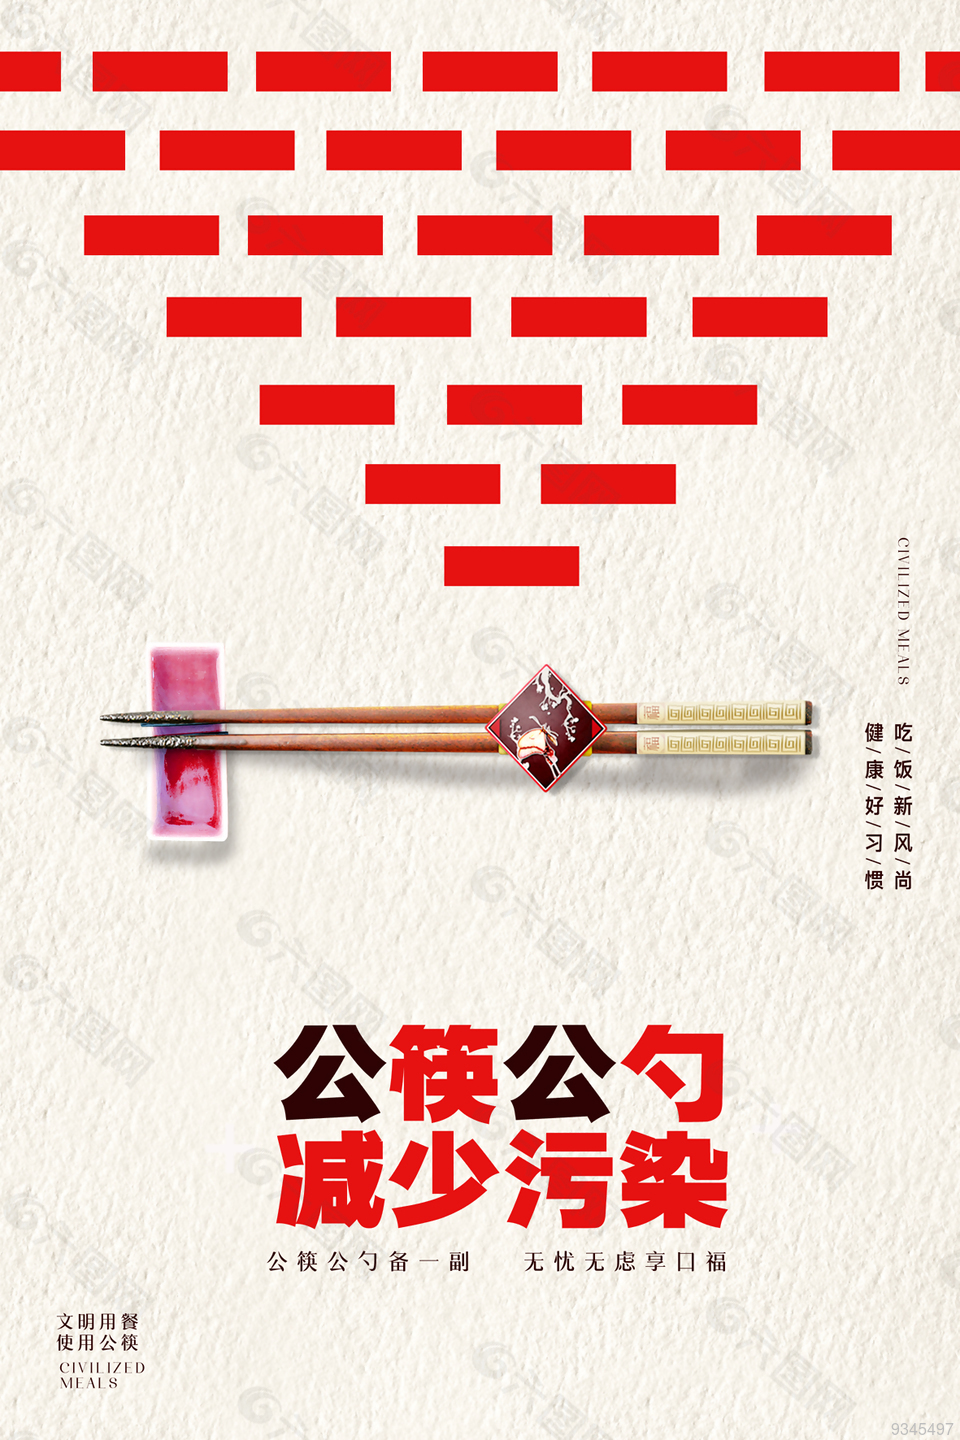 创意提倡公筷公勺减少污染宣传海报